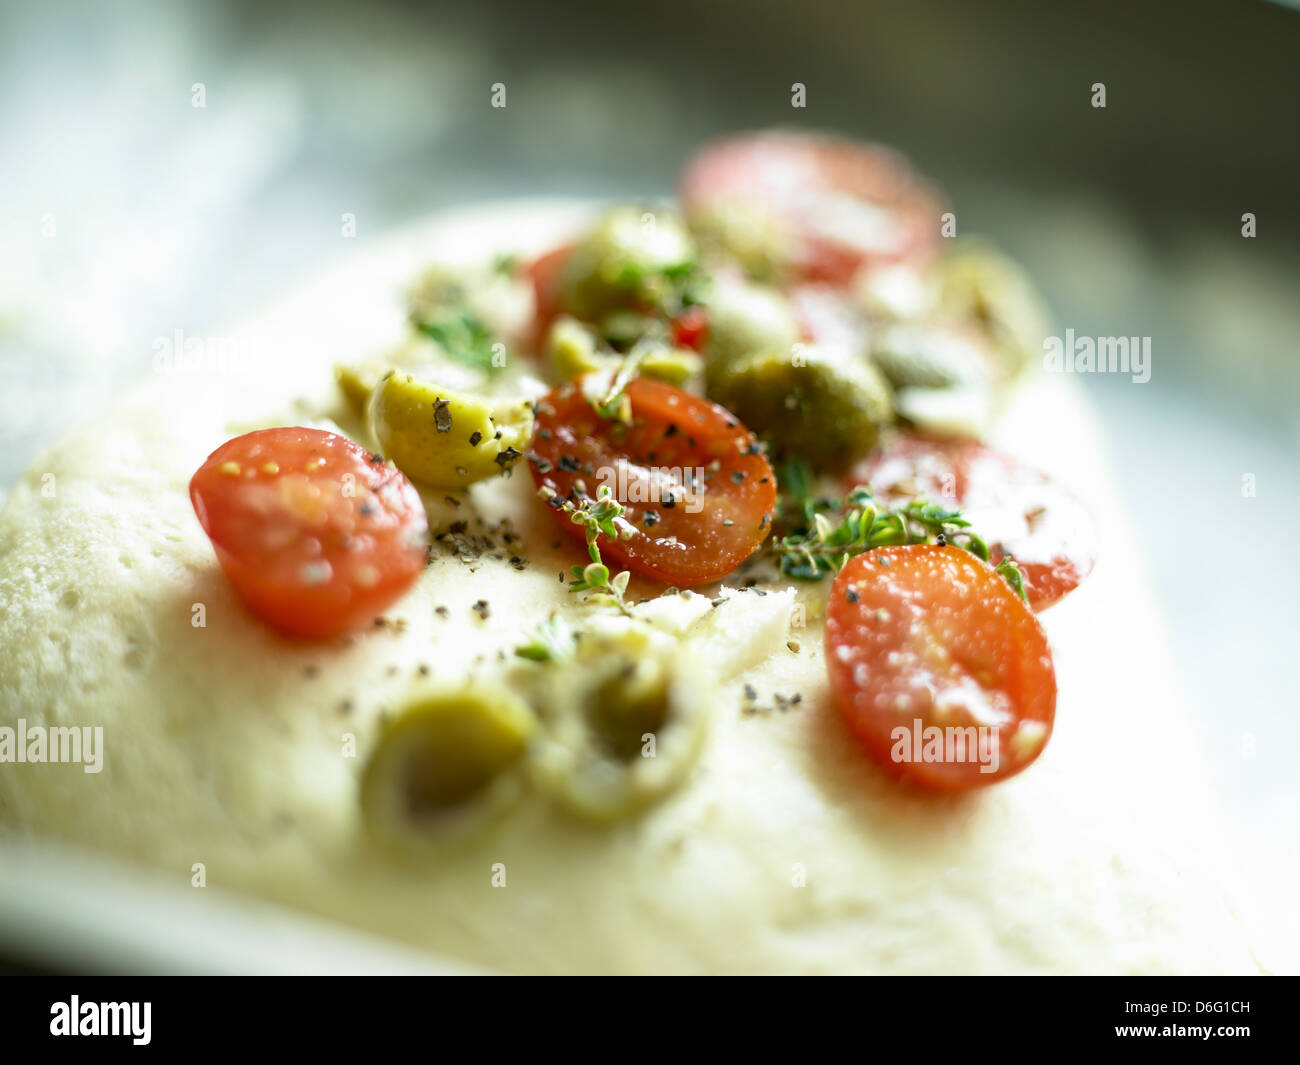 Italienisches Brot mit Oliven und Tomaten - Rezept / Schritt Schuss Stockfoto